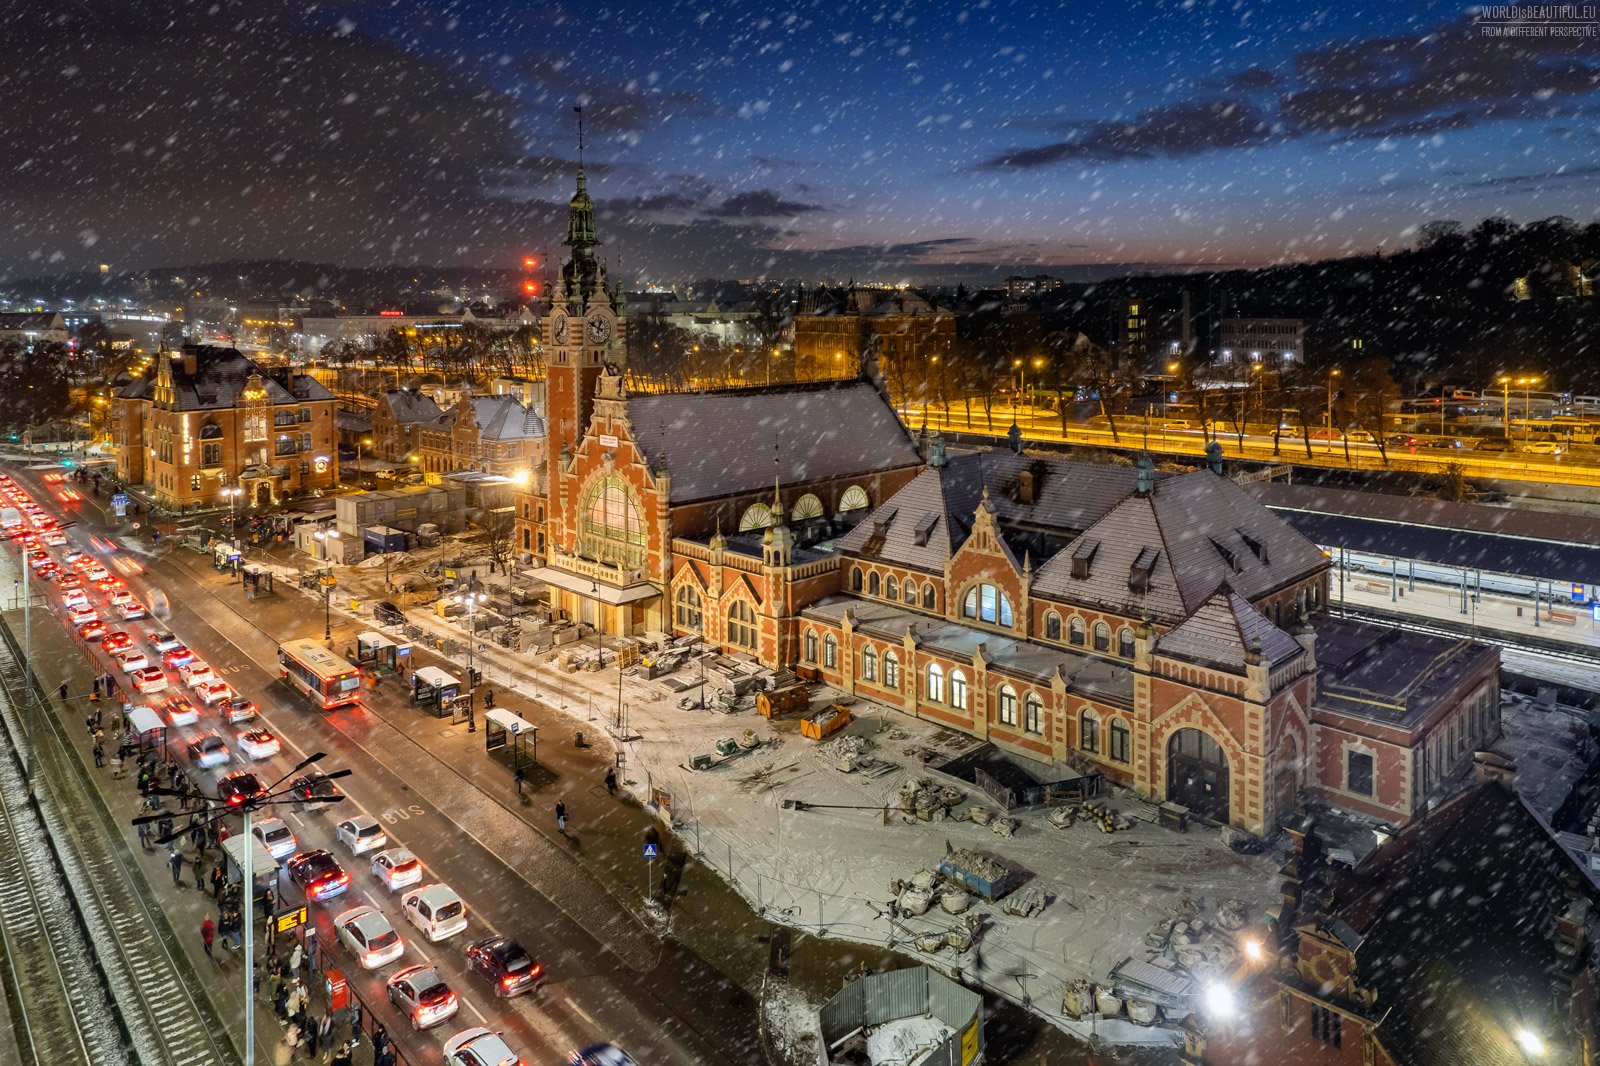 Gdańsk Główny Railway Station in winter